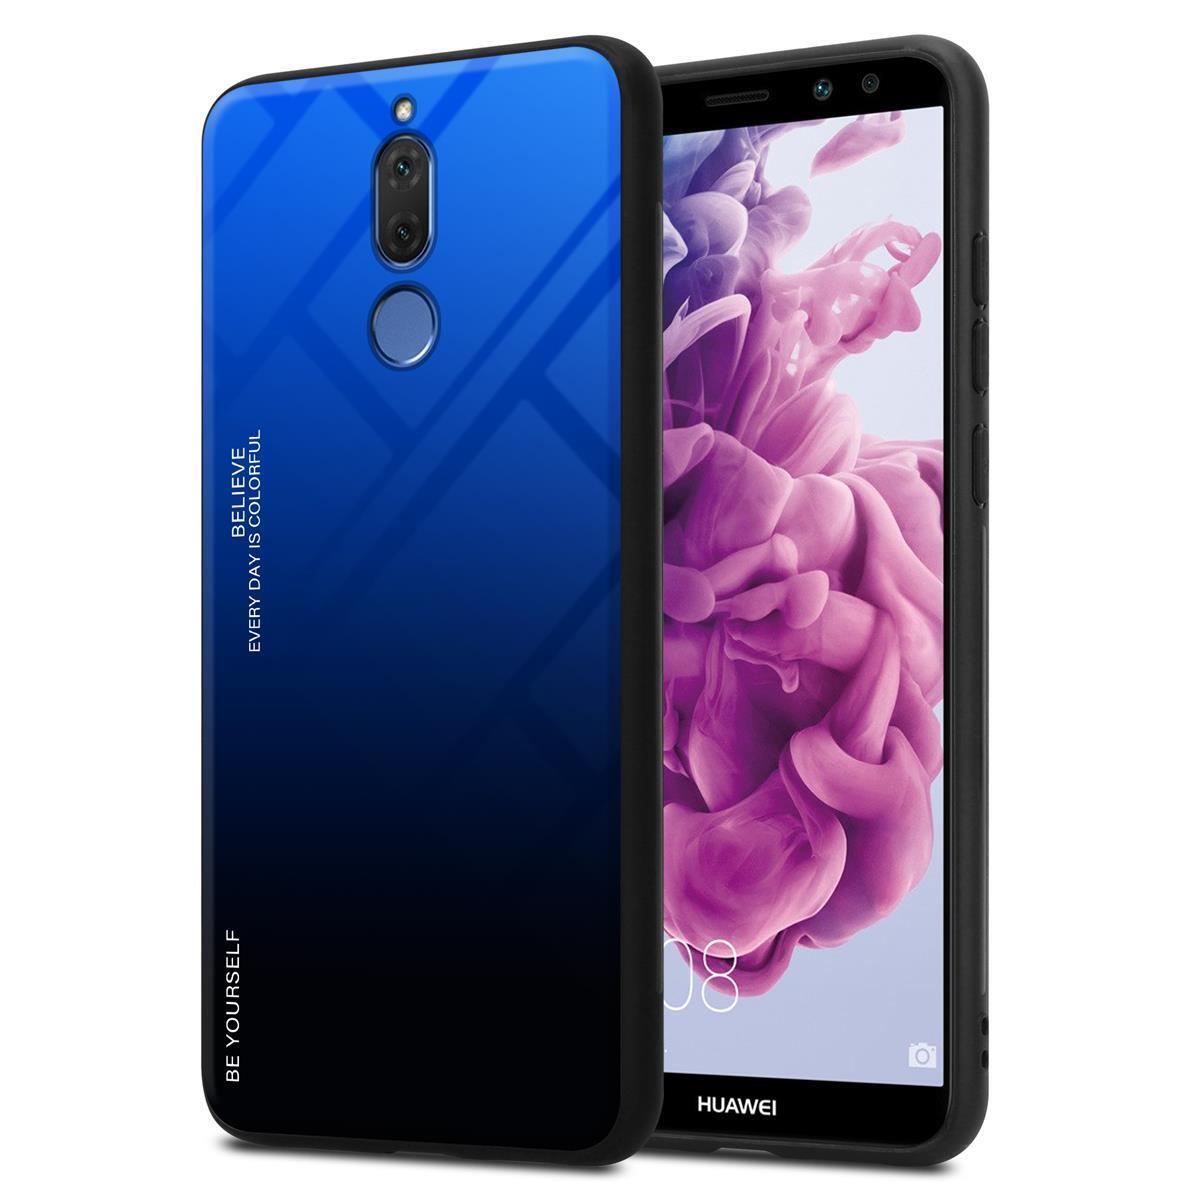 Huawei MATE 10 LITE Deksel Case Cover (svart) - Elkjøp